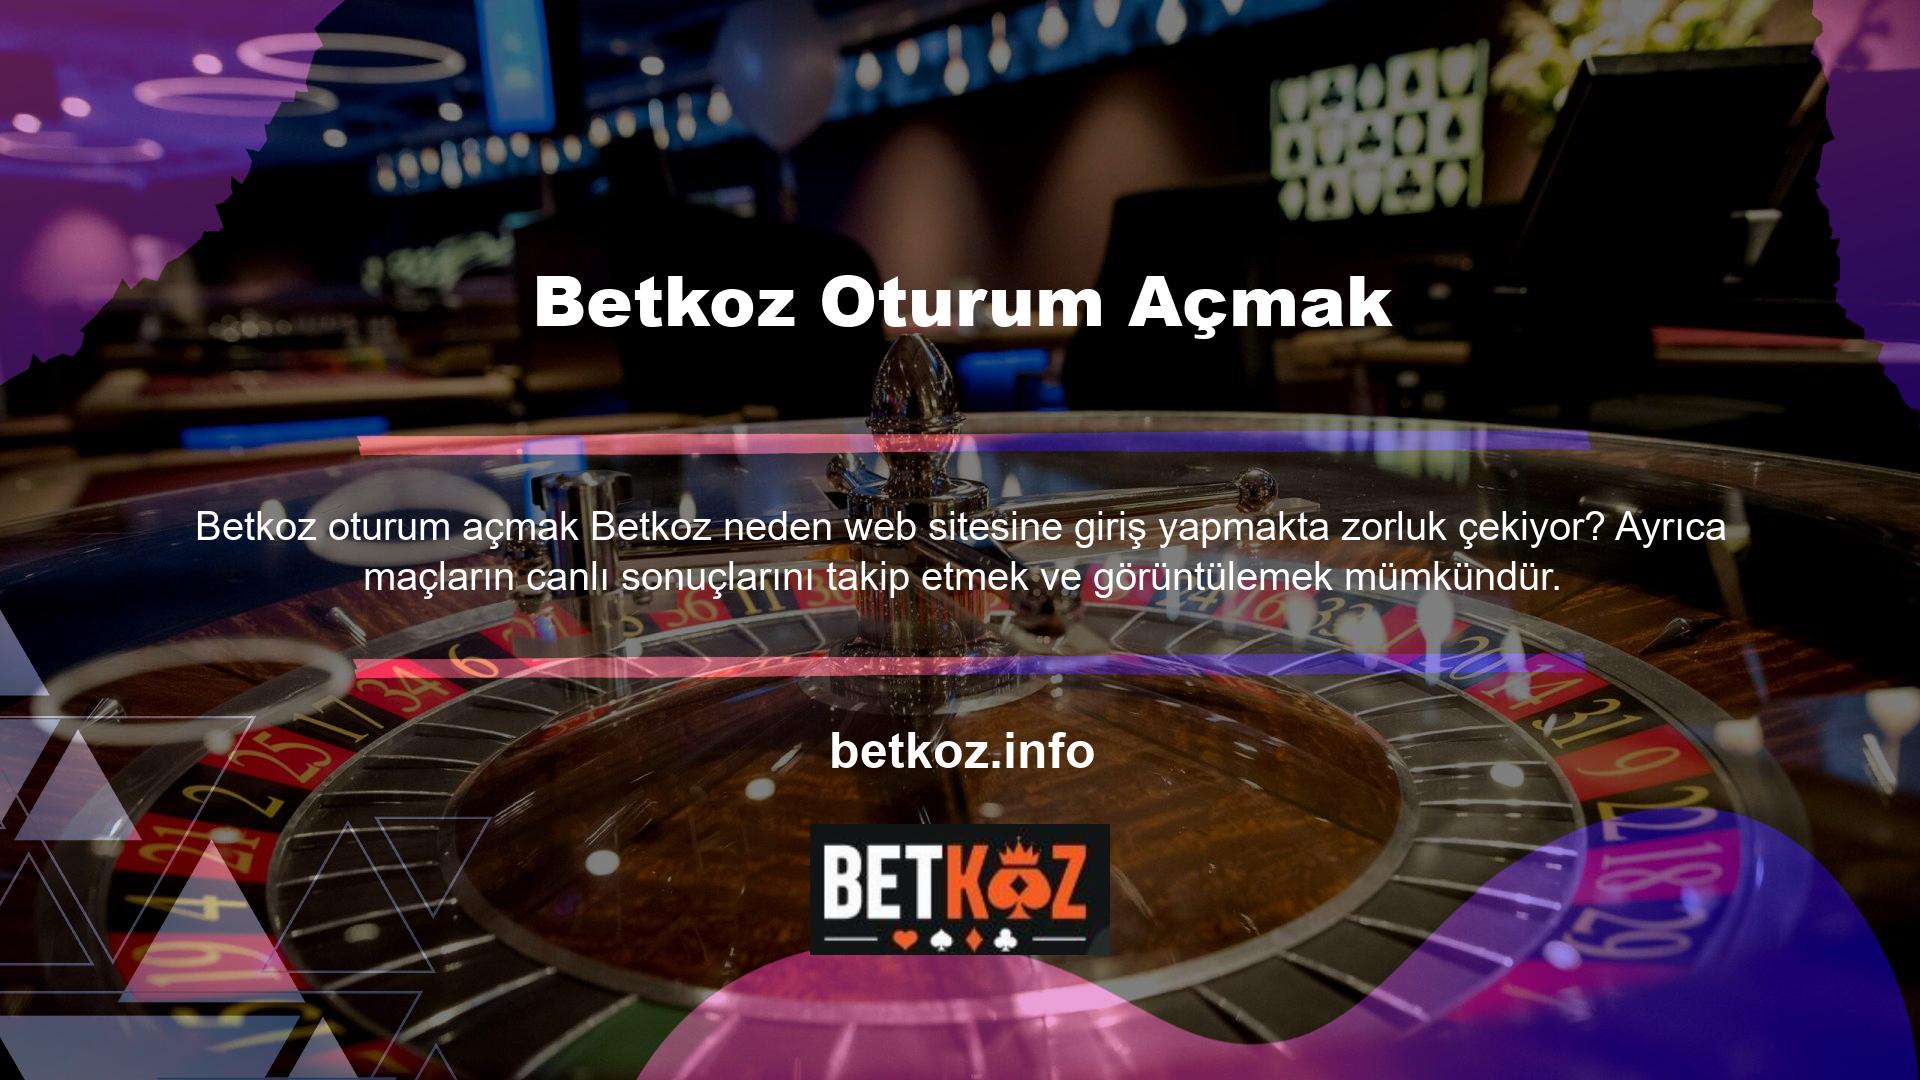 Türkiye'deki casinolarla ilgili düzenlemeler oldukça sıkı bir şekilde düzenlenmiştir